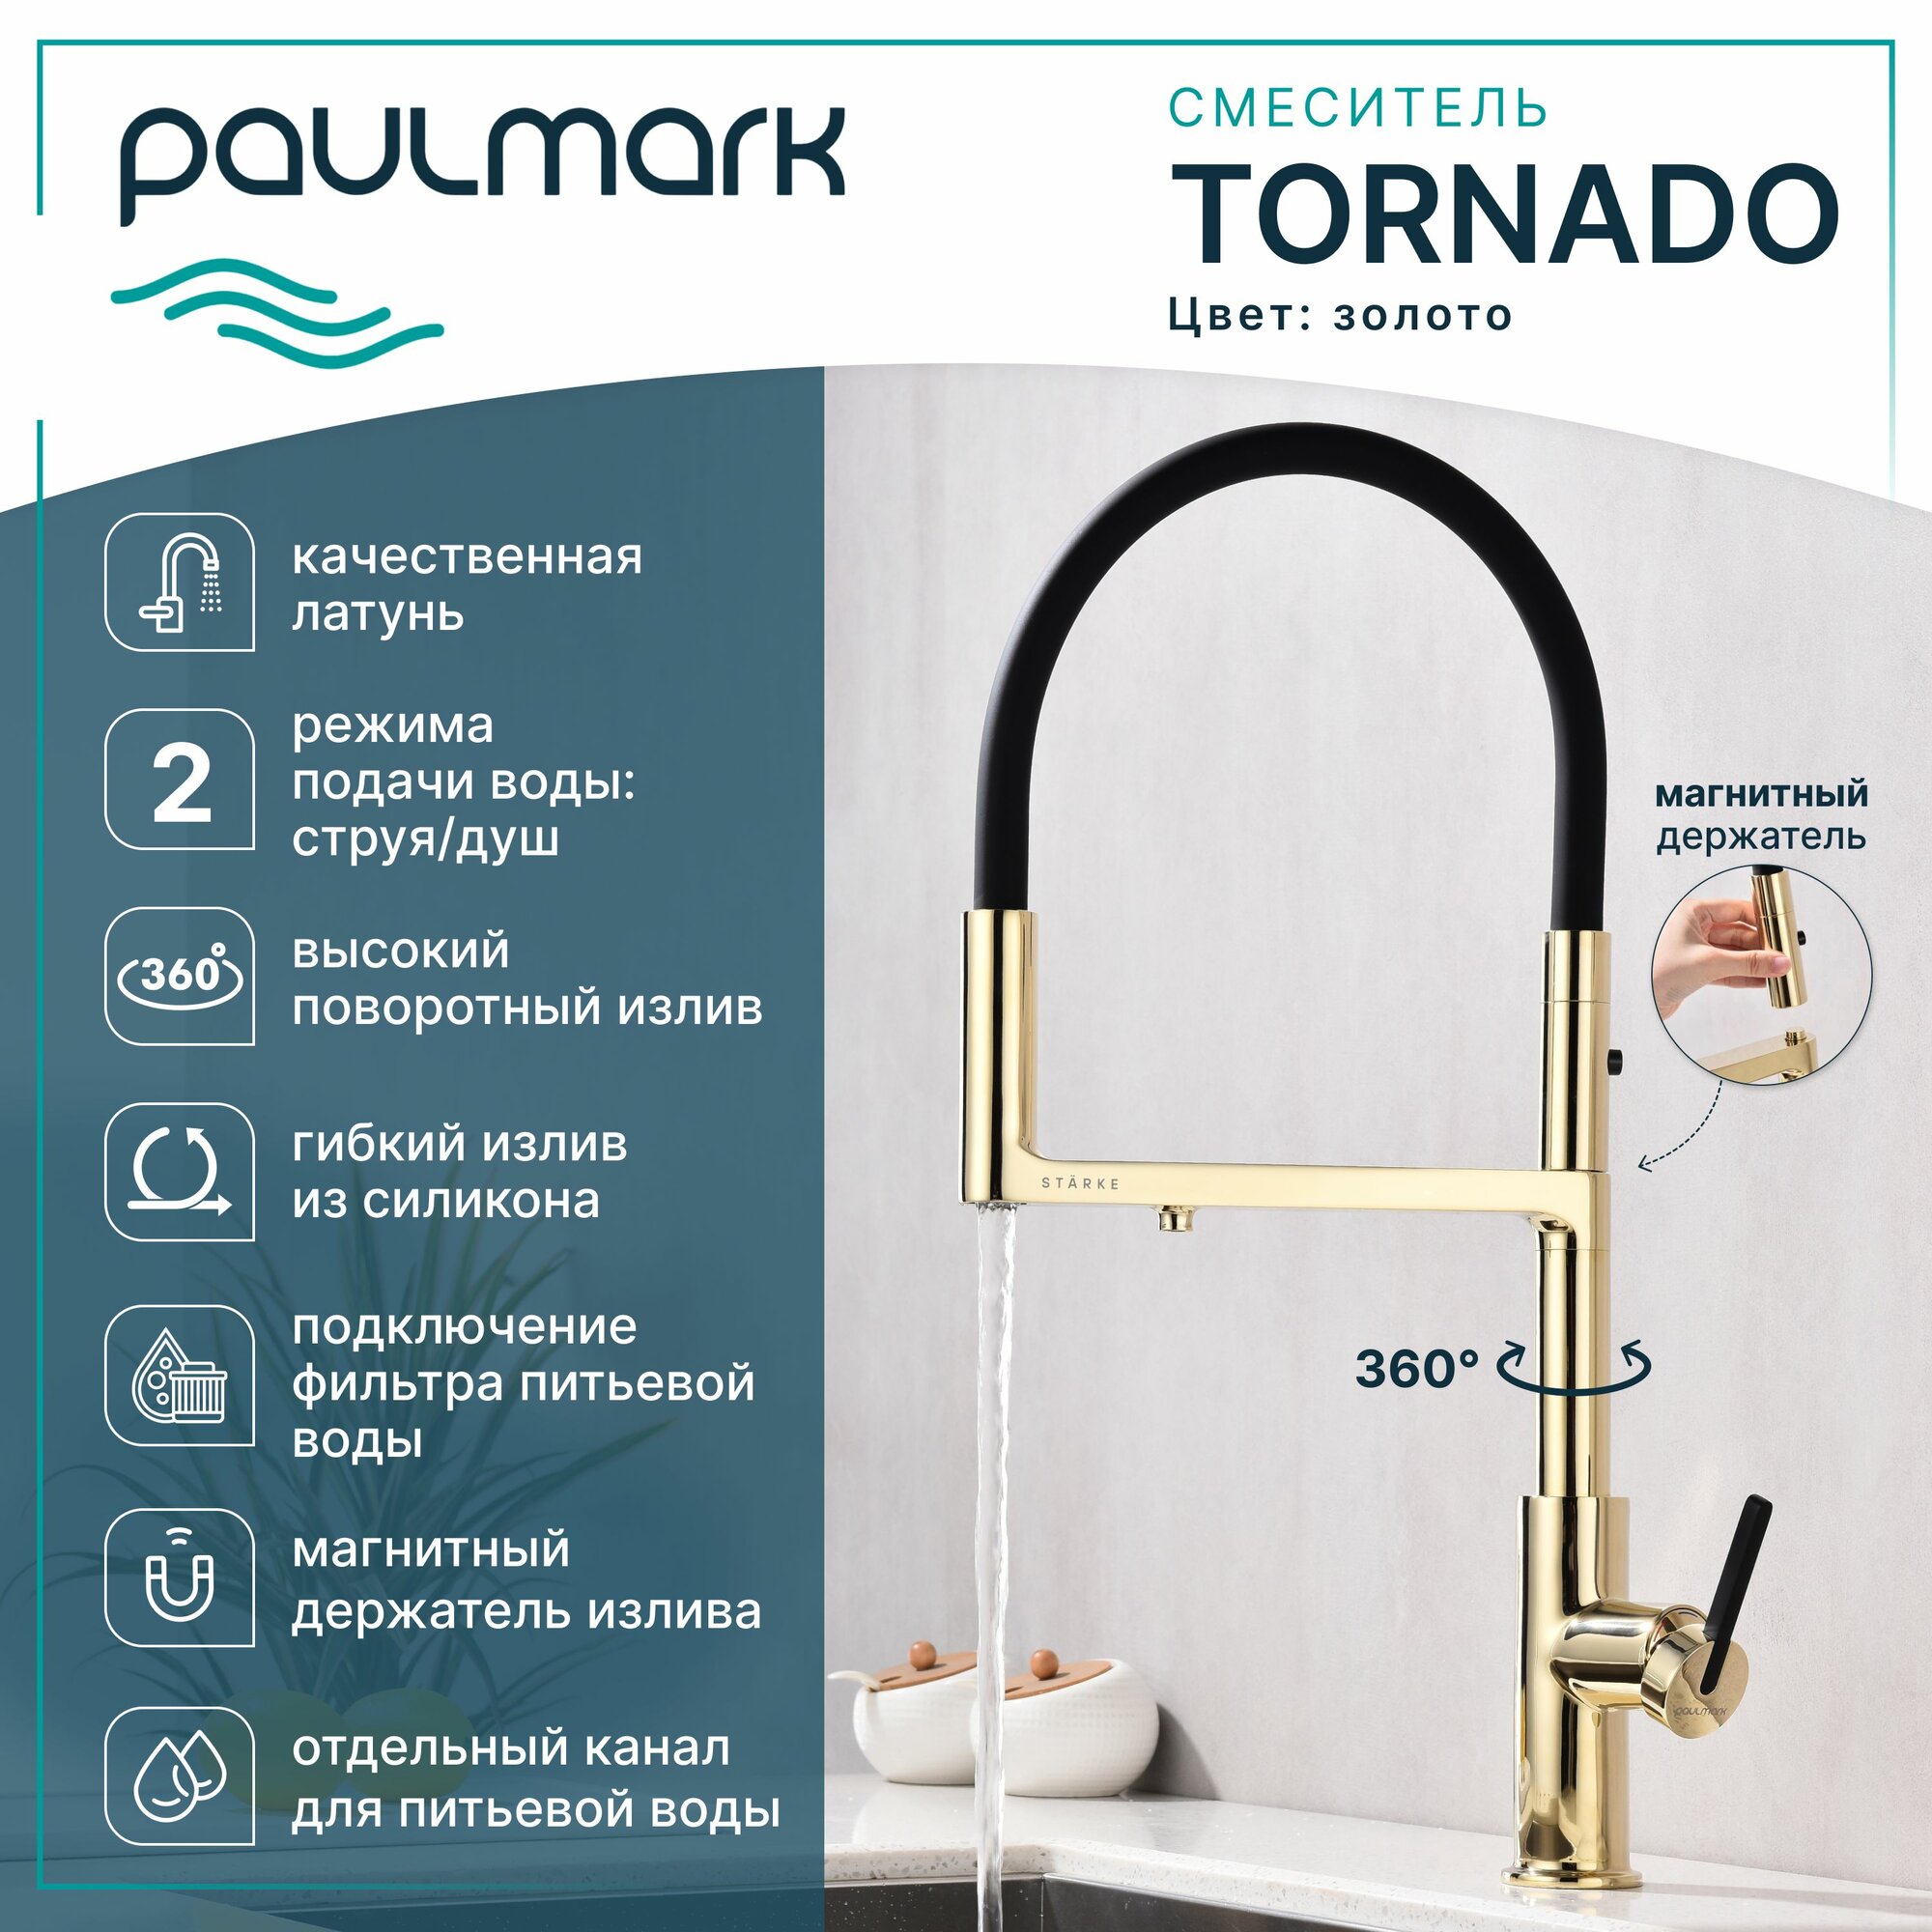 Смеситель для кухни с гибким изливом Paulmark-Starke TORNADO, подключение к фильтру питьевой воды, магнитная фиксация, режимы струя / душ, латунь / силикон, на мойку, золото, To213402-G